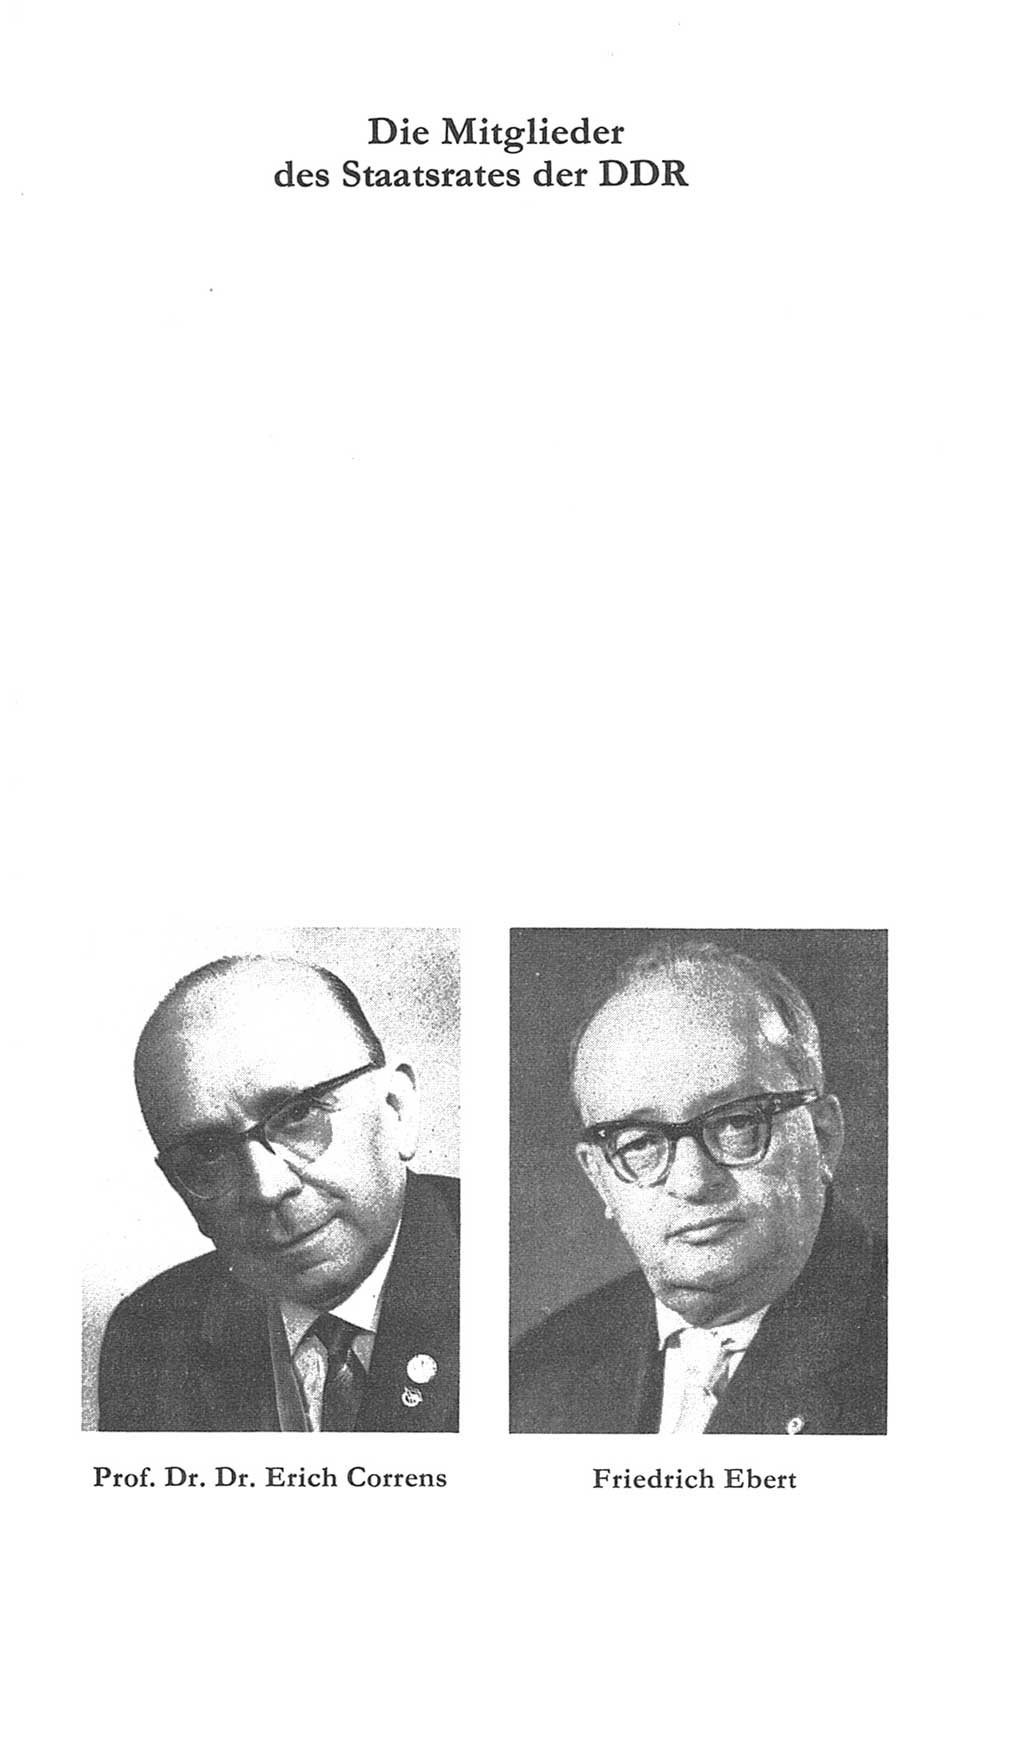 Volkskammer (VK) der Deutschen Demokratischen Republik (DDR) 5. Wahlperiode 1967-1971, Seite 145 (VK. DDR 5. WP. 1967-1971, S. 145)